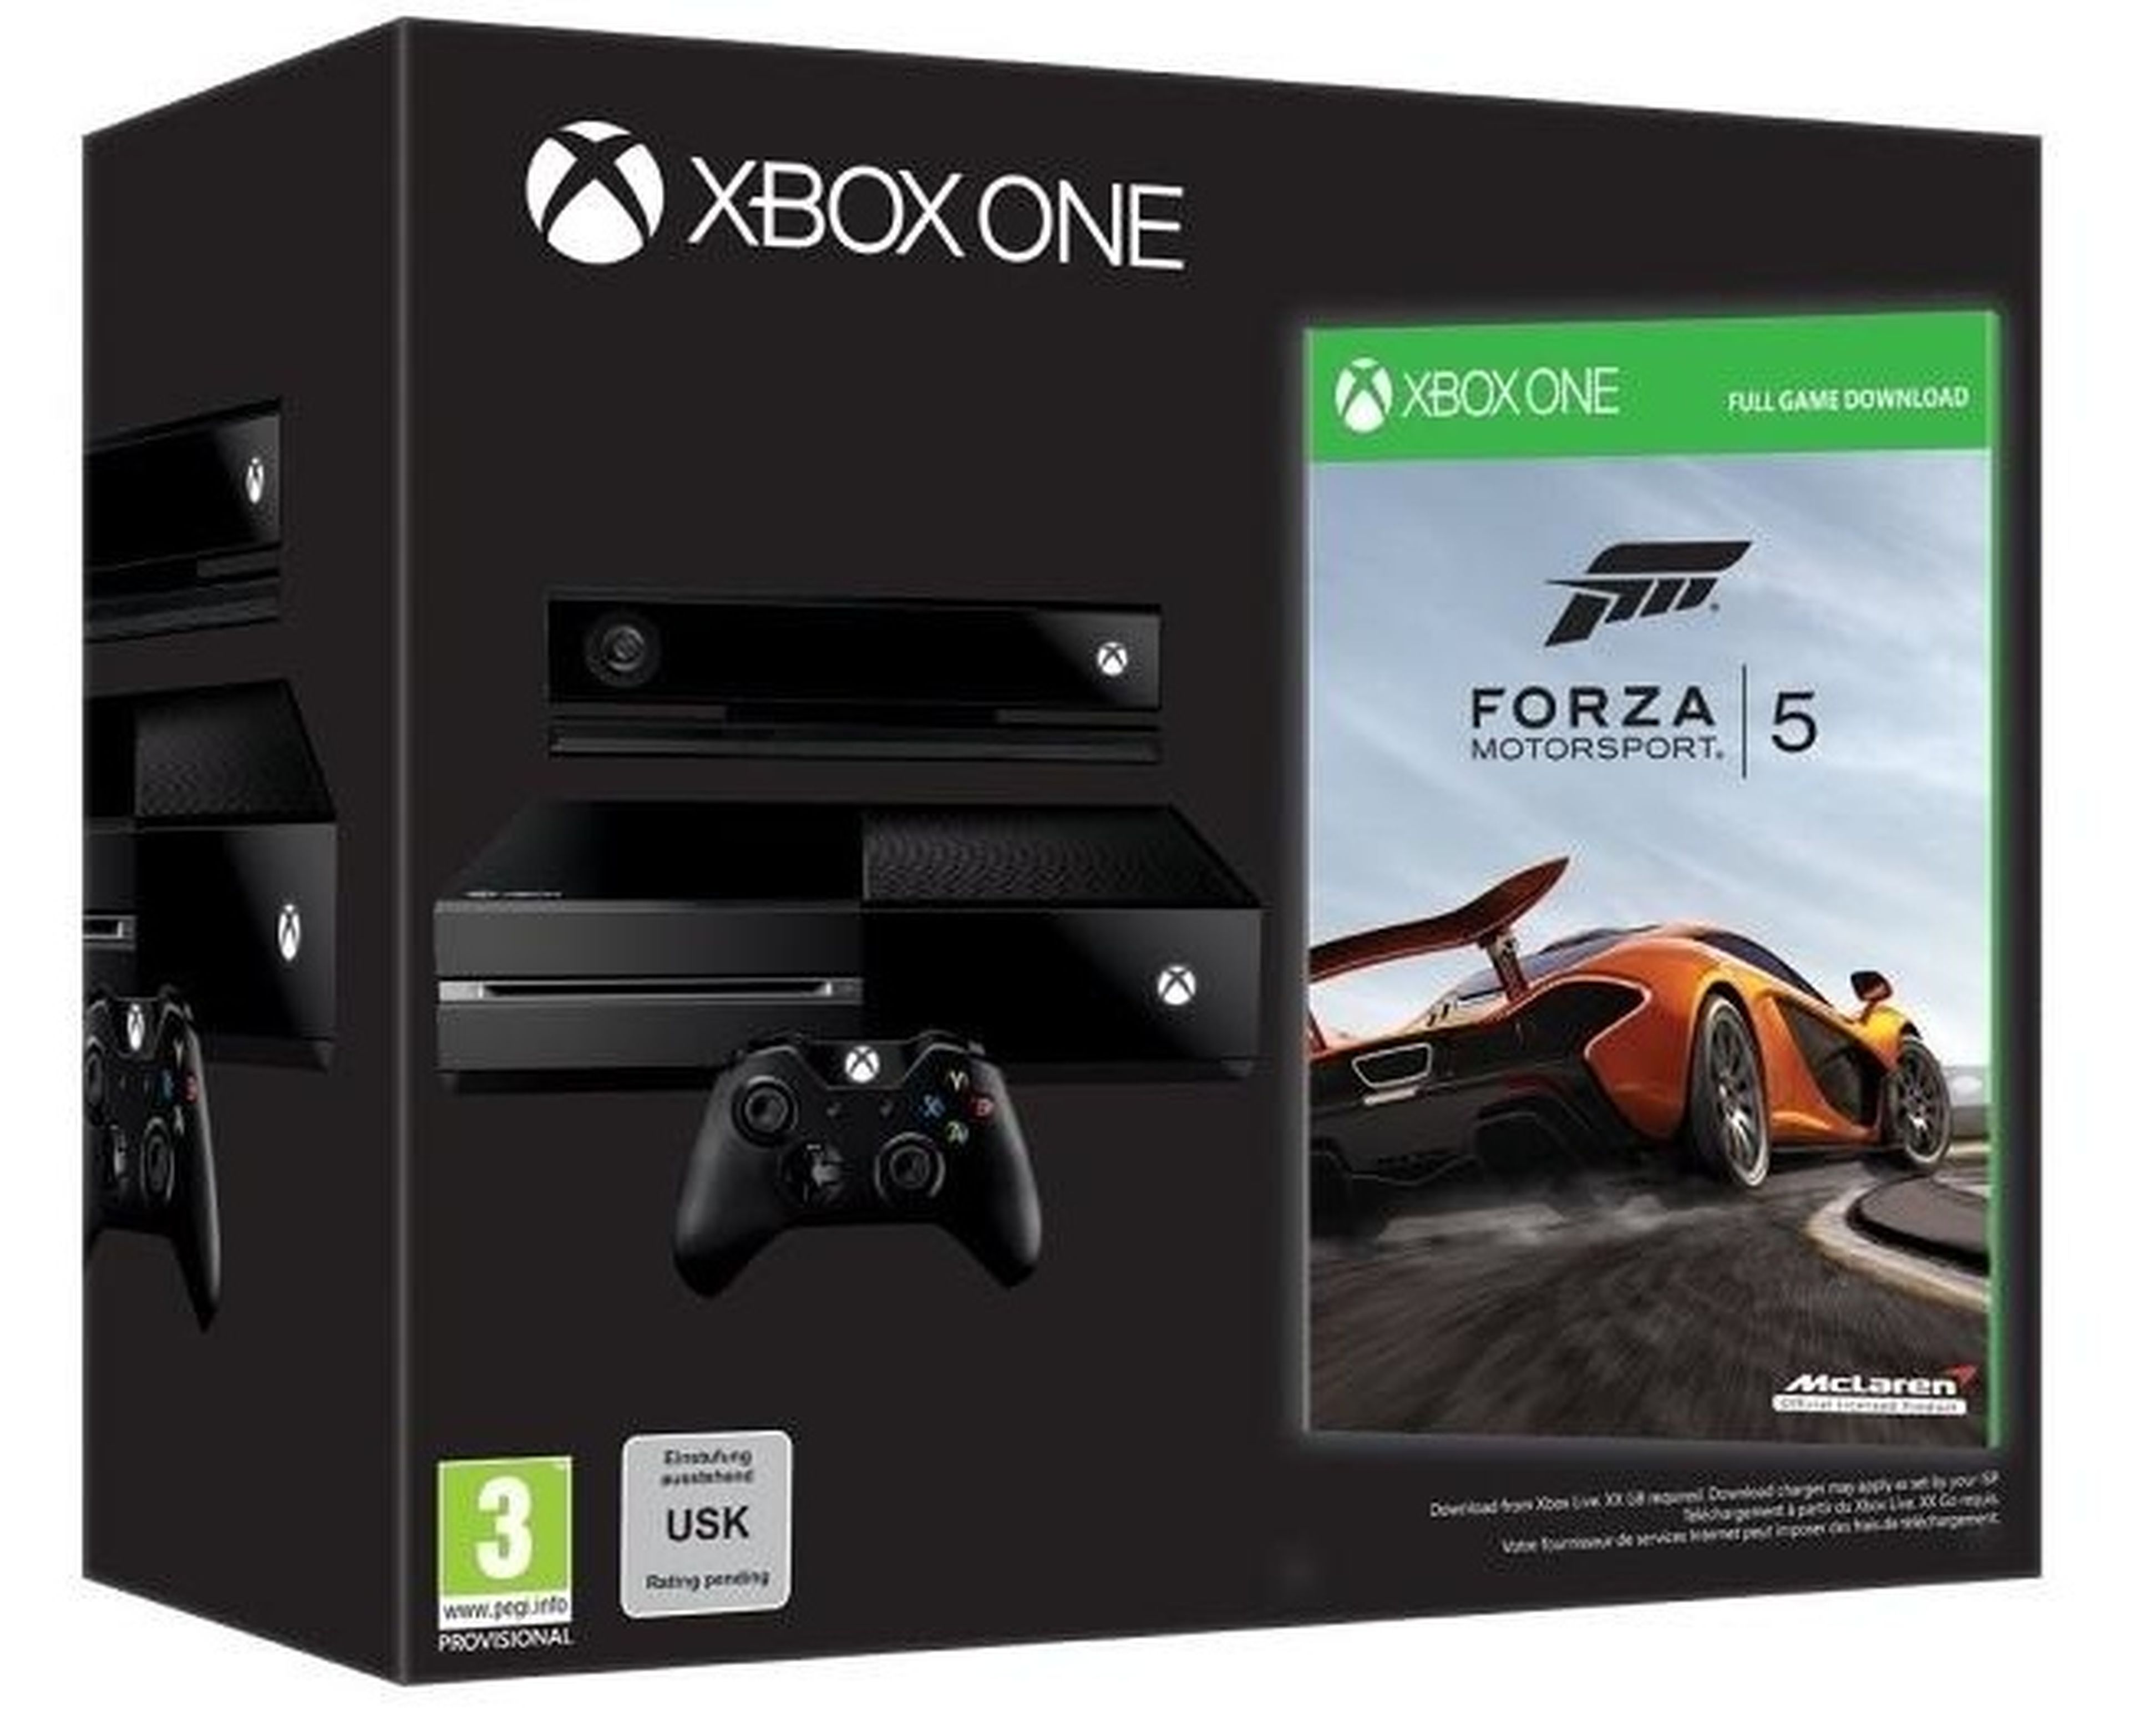 Nuevo pack de Xbox One + Forza 5